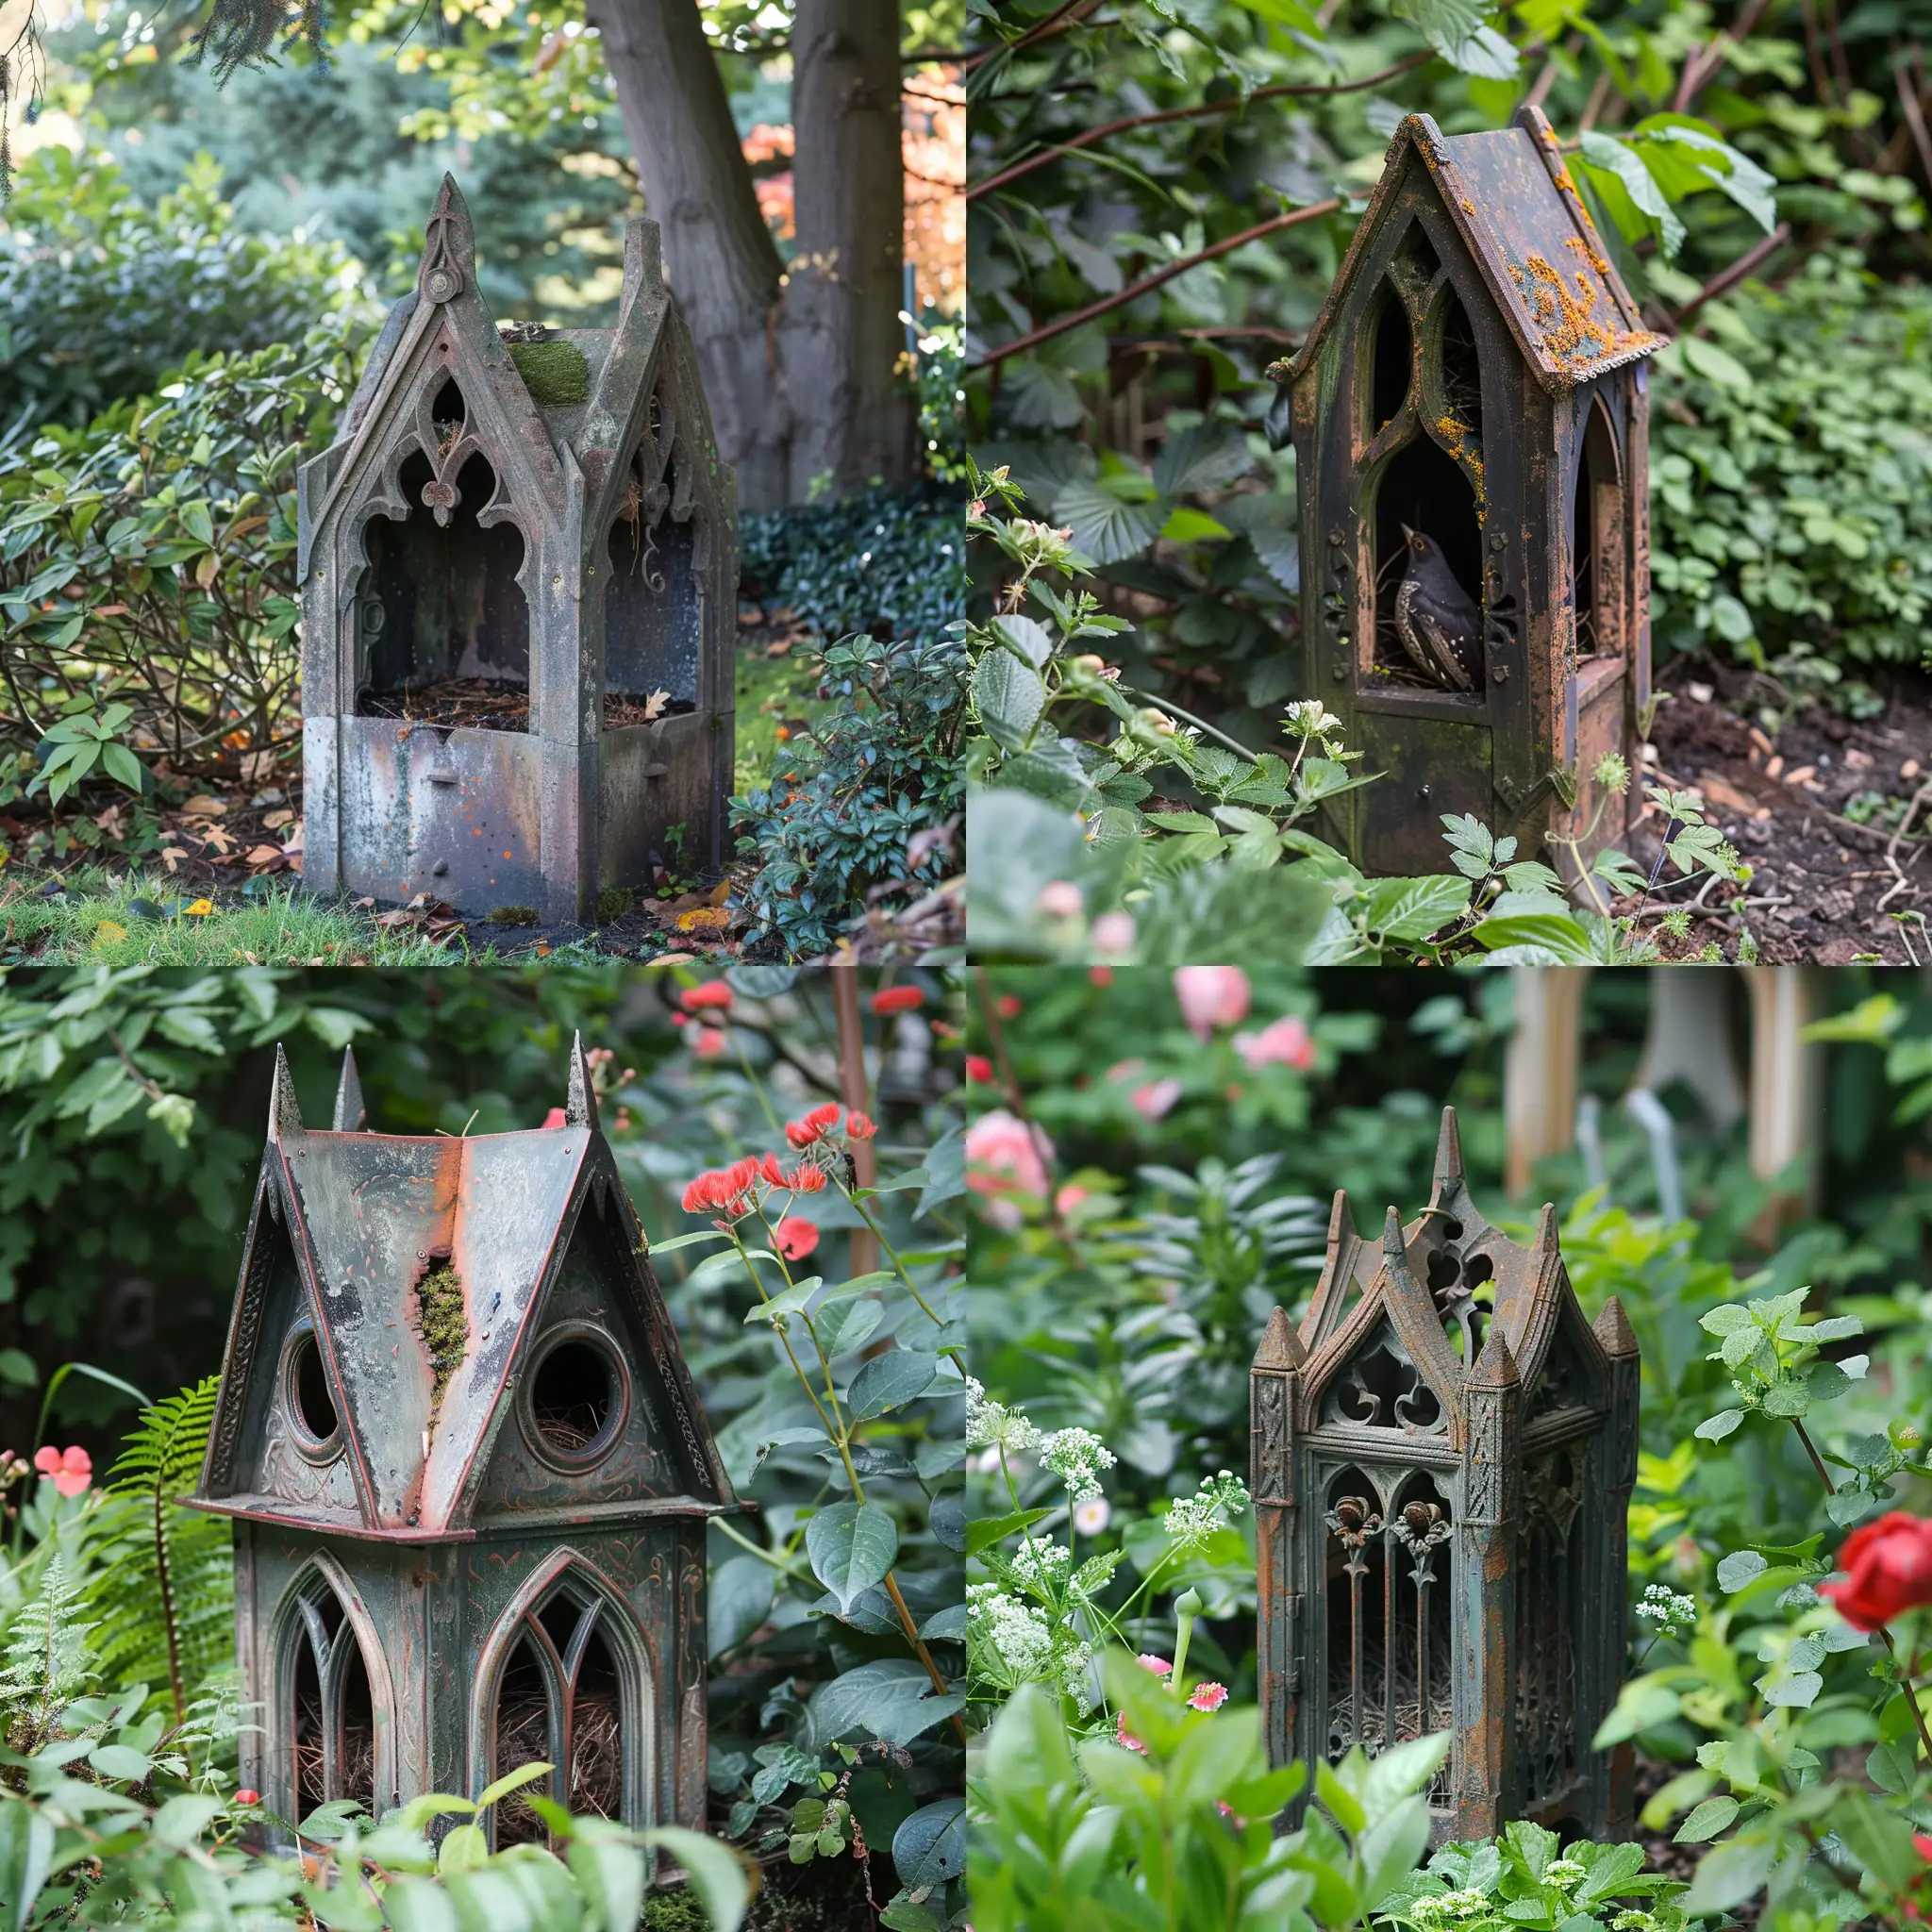 Enchanting-Gothic-Fachwerk-Nest-Box-in-a-Lush-Garden